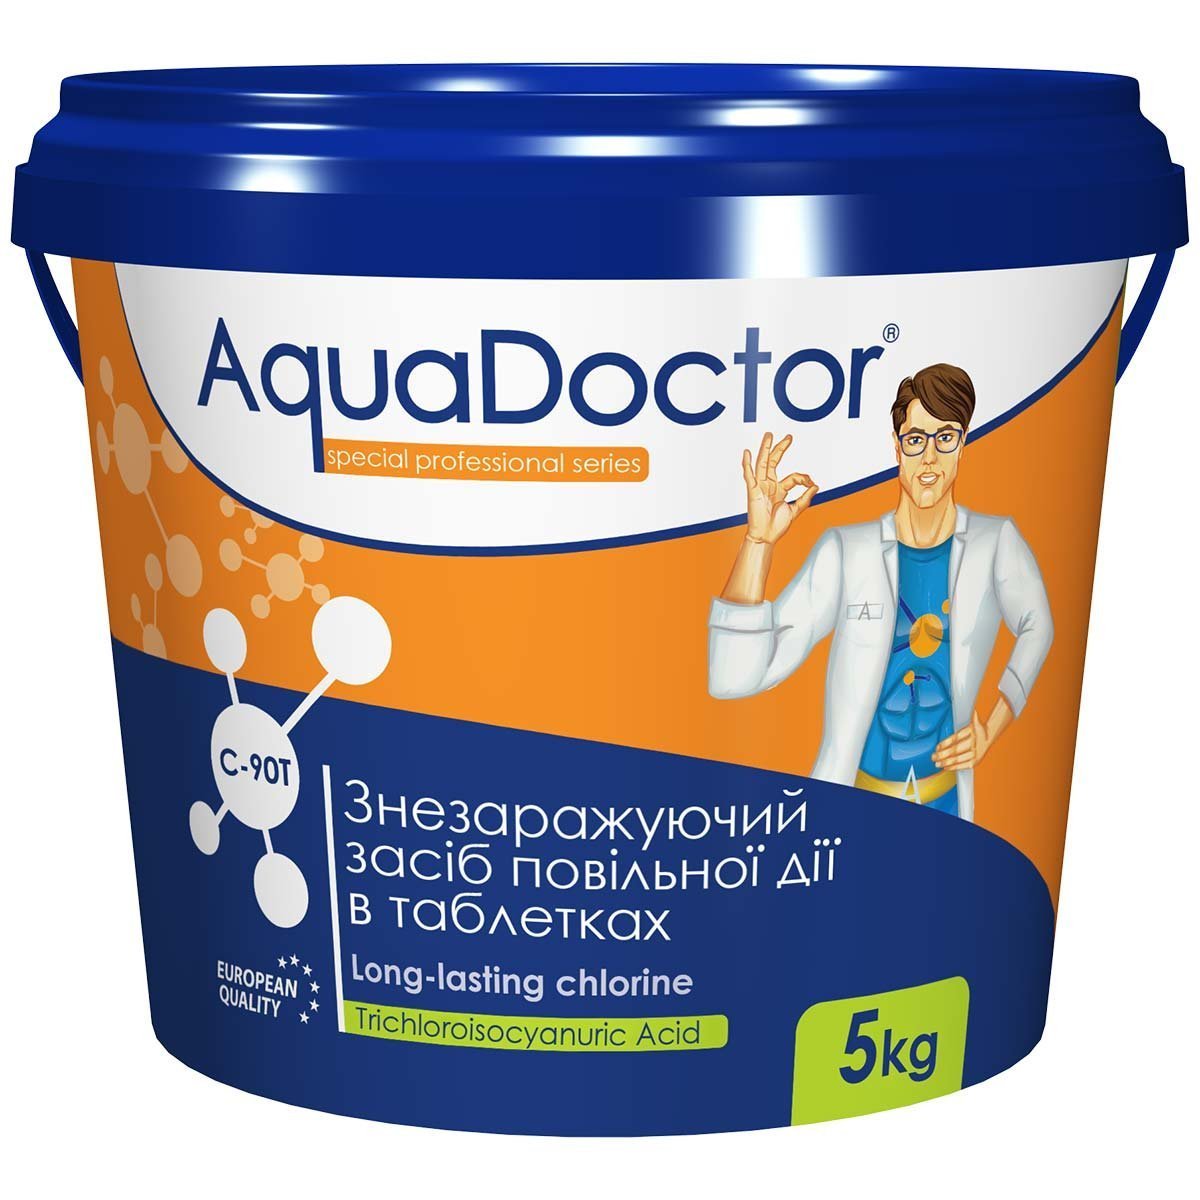 Хлор медленного действия в таблетках AquaDoctor C-90T 5 кг